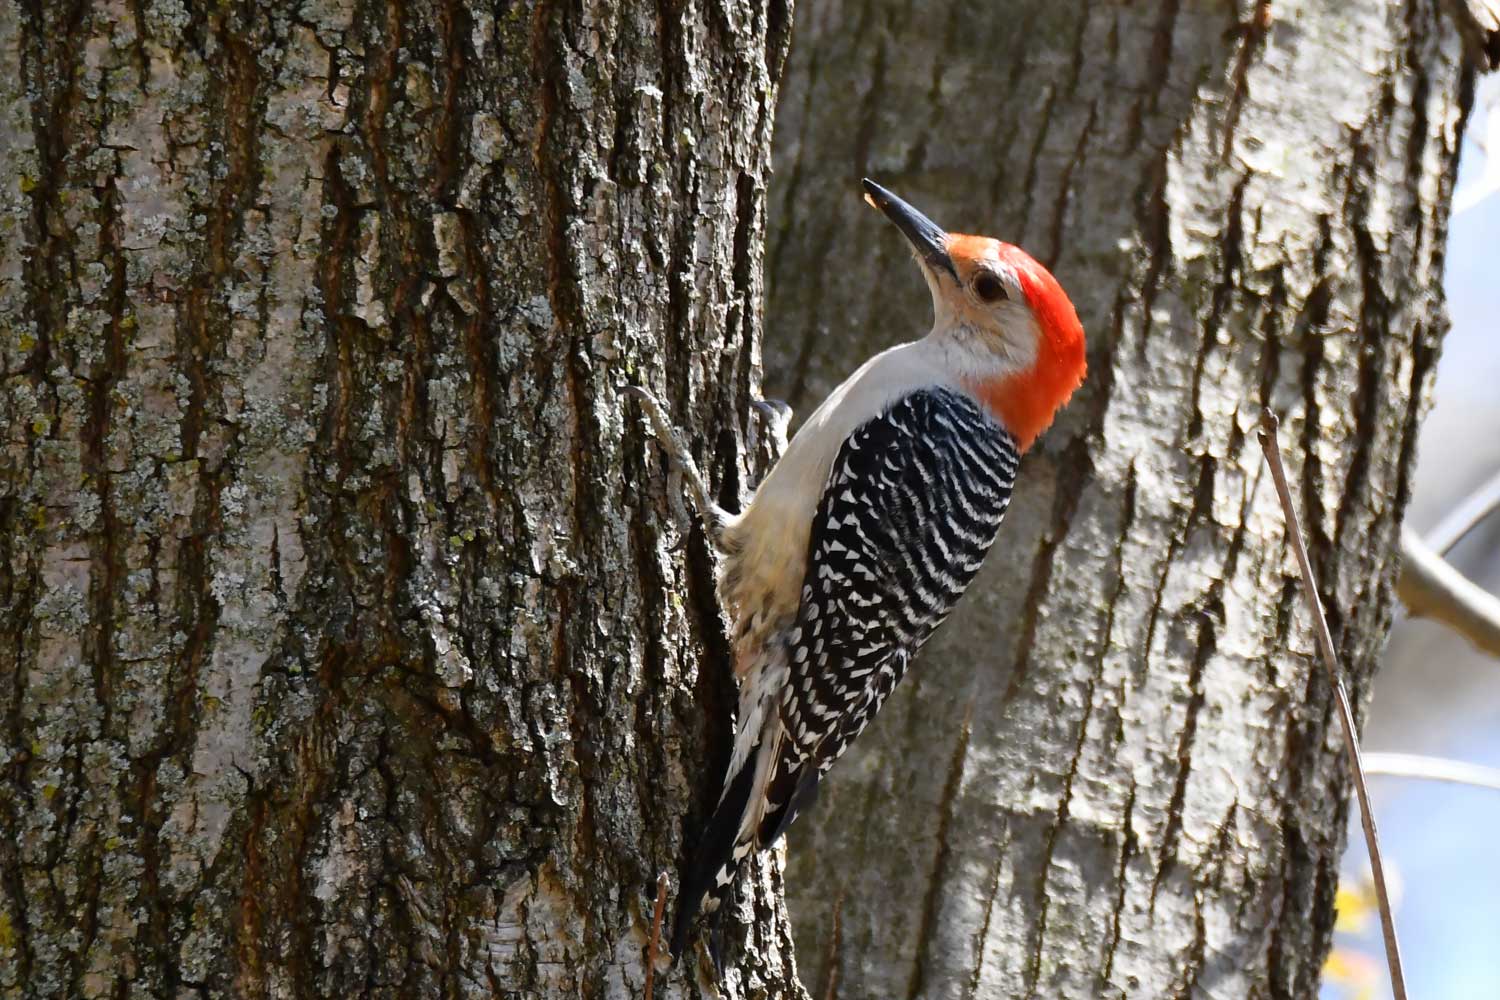 Red bellied woodpecker on a tree.